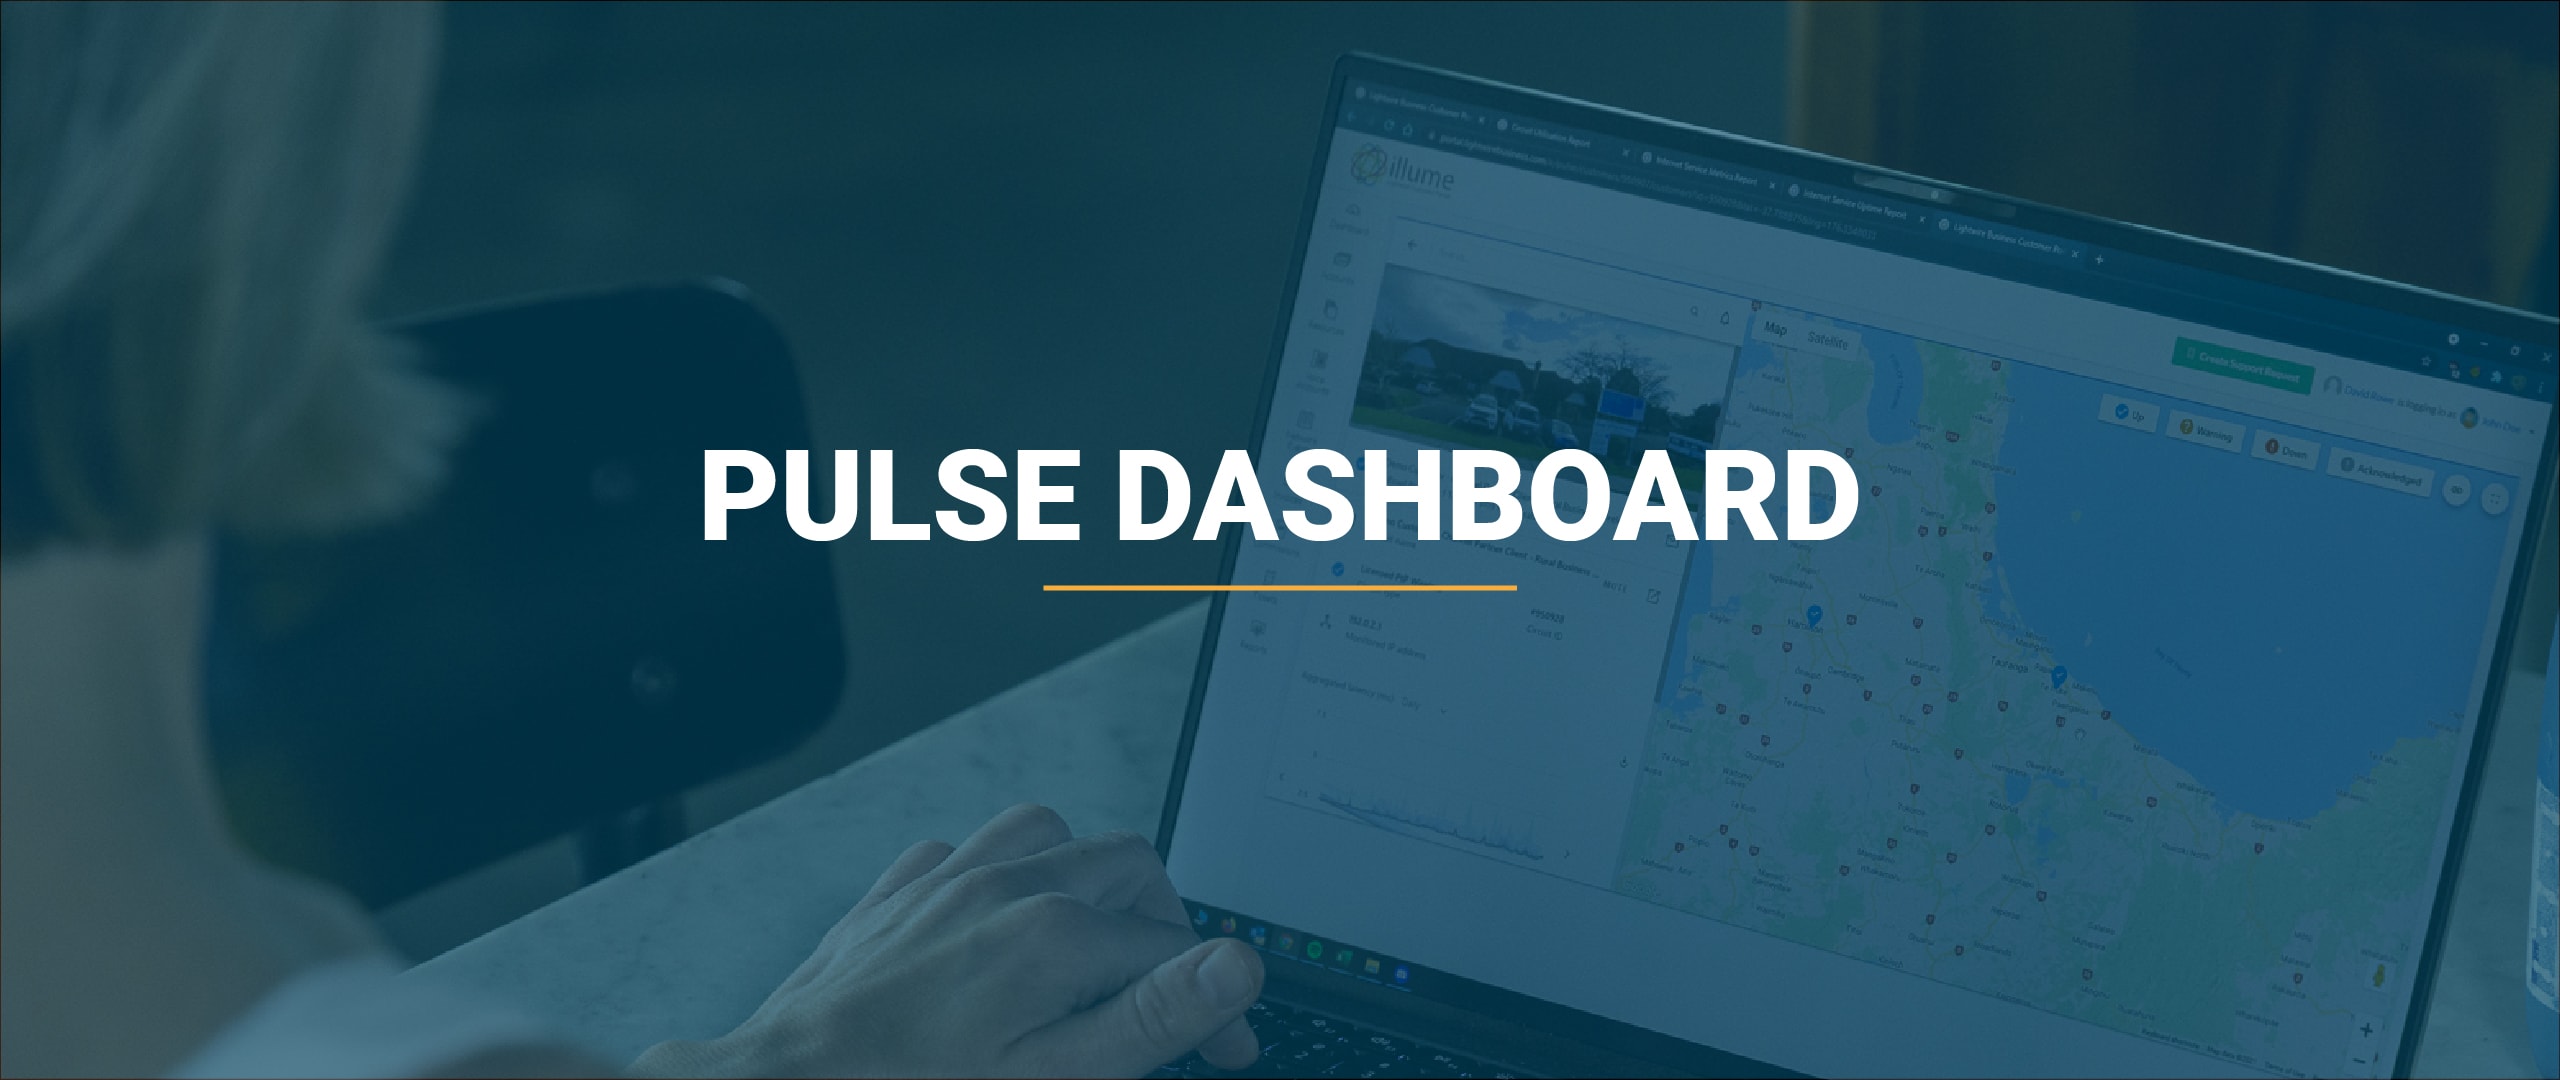 Pulse dashboard blog